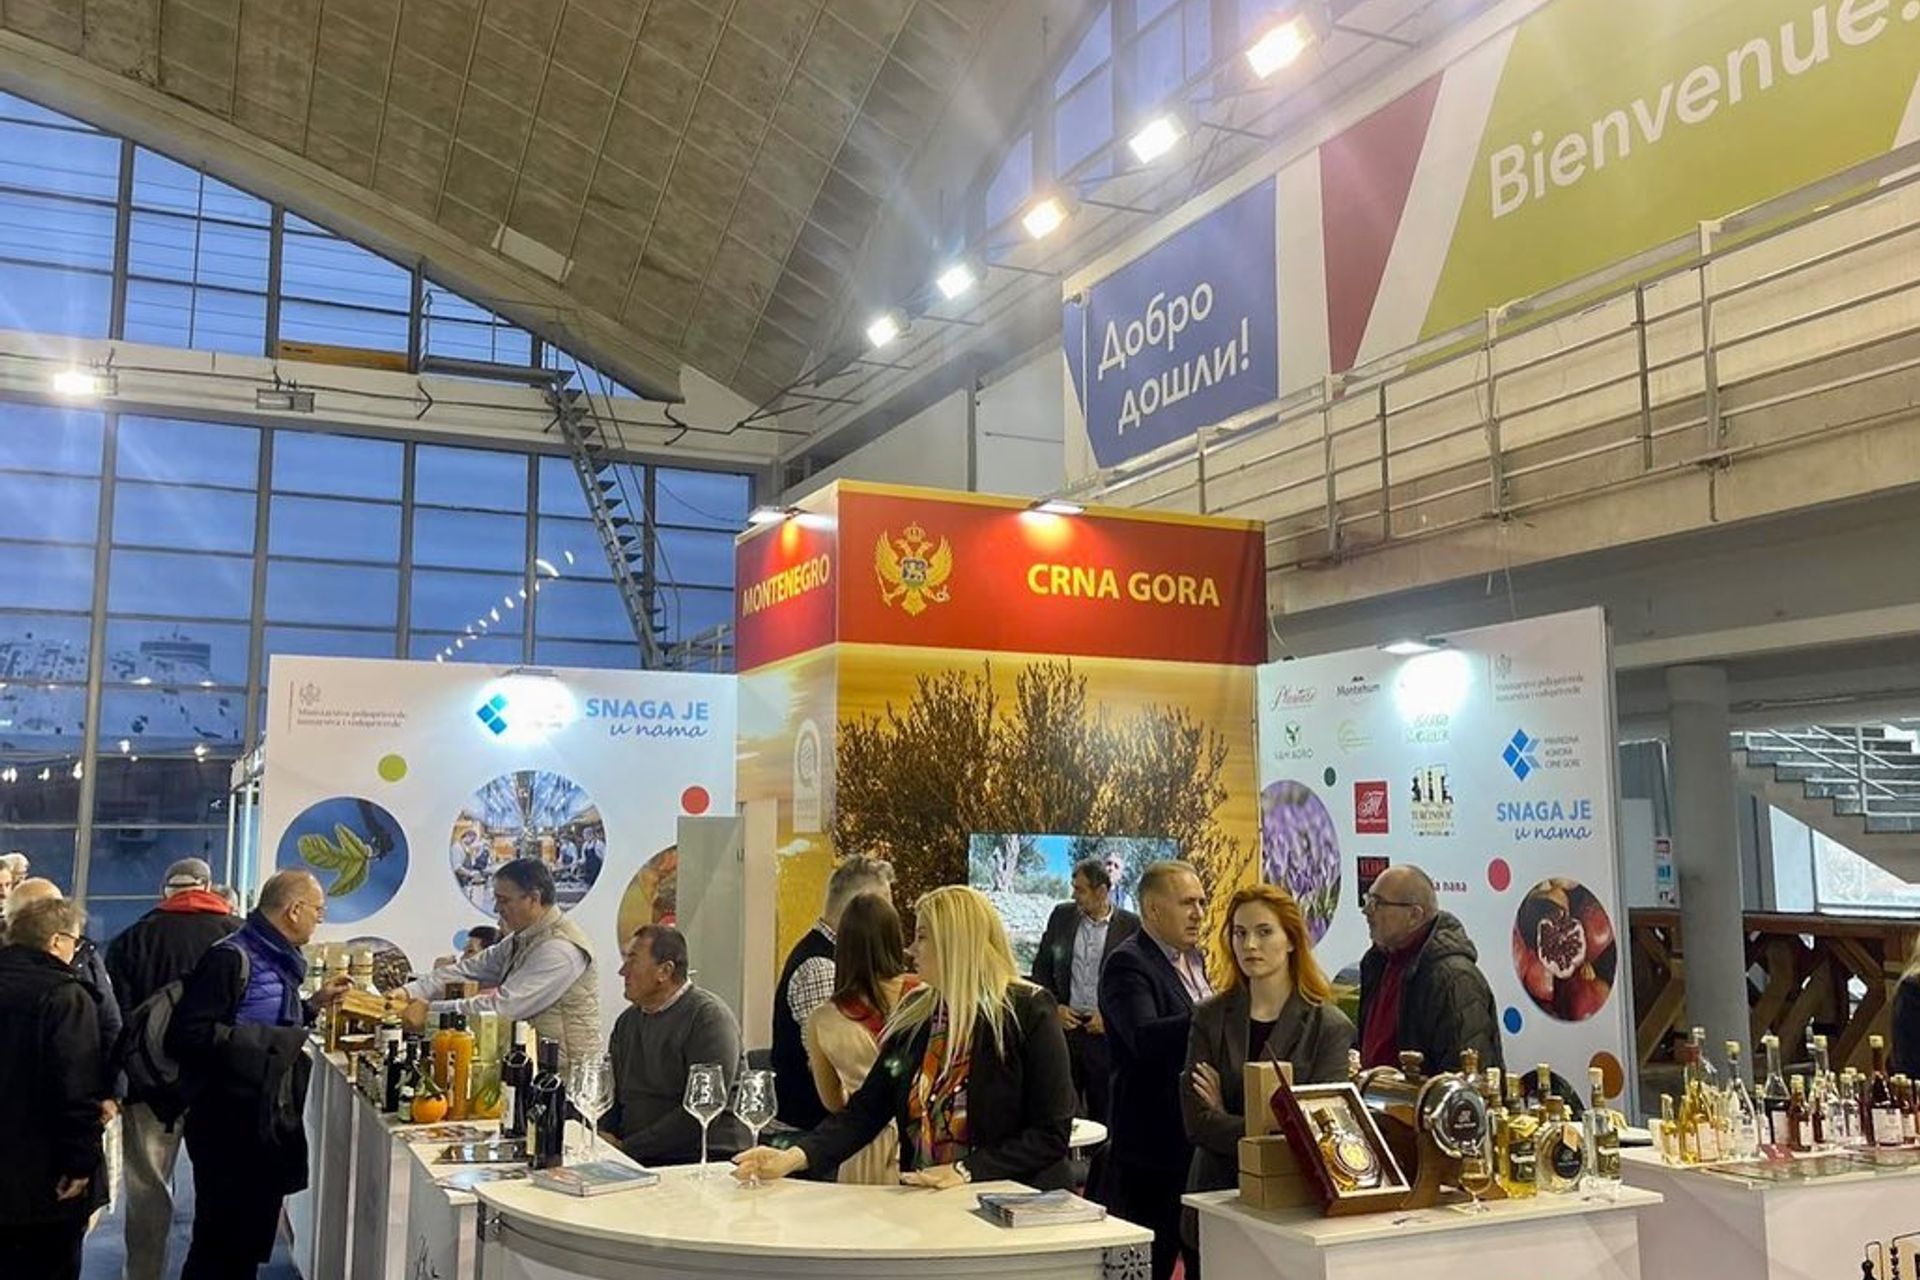 Crnogorski proizvođači predstavljaju svoje proizvode na 4. Međunarodnom sajmu Agro Belgrade 2023.